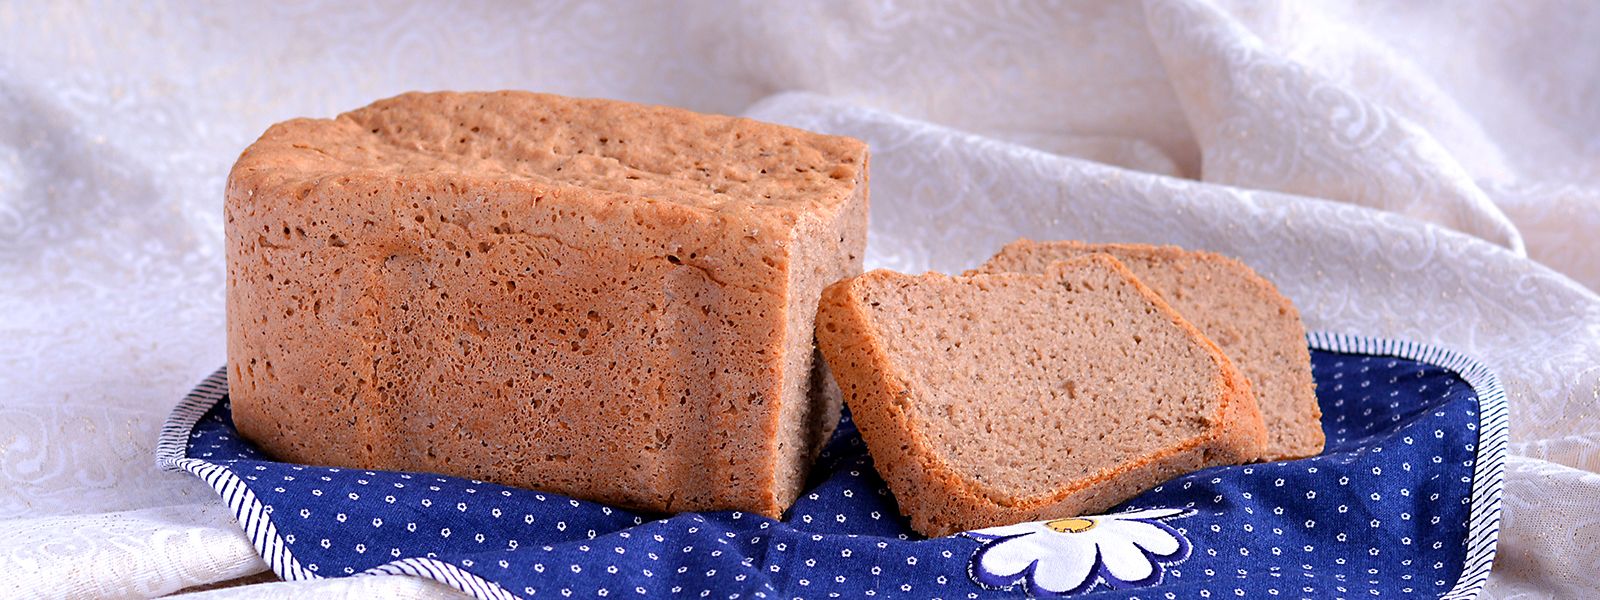 Chléb pšenično-žitný